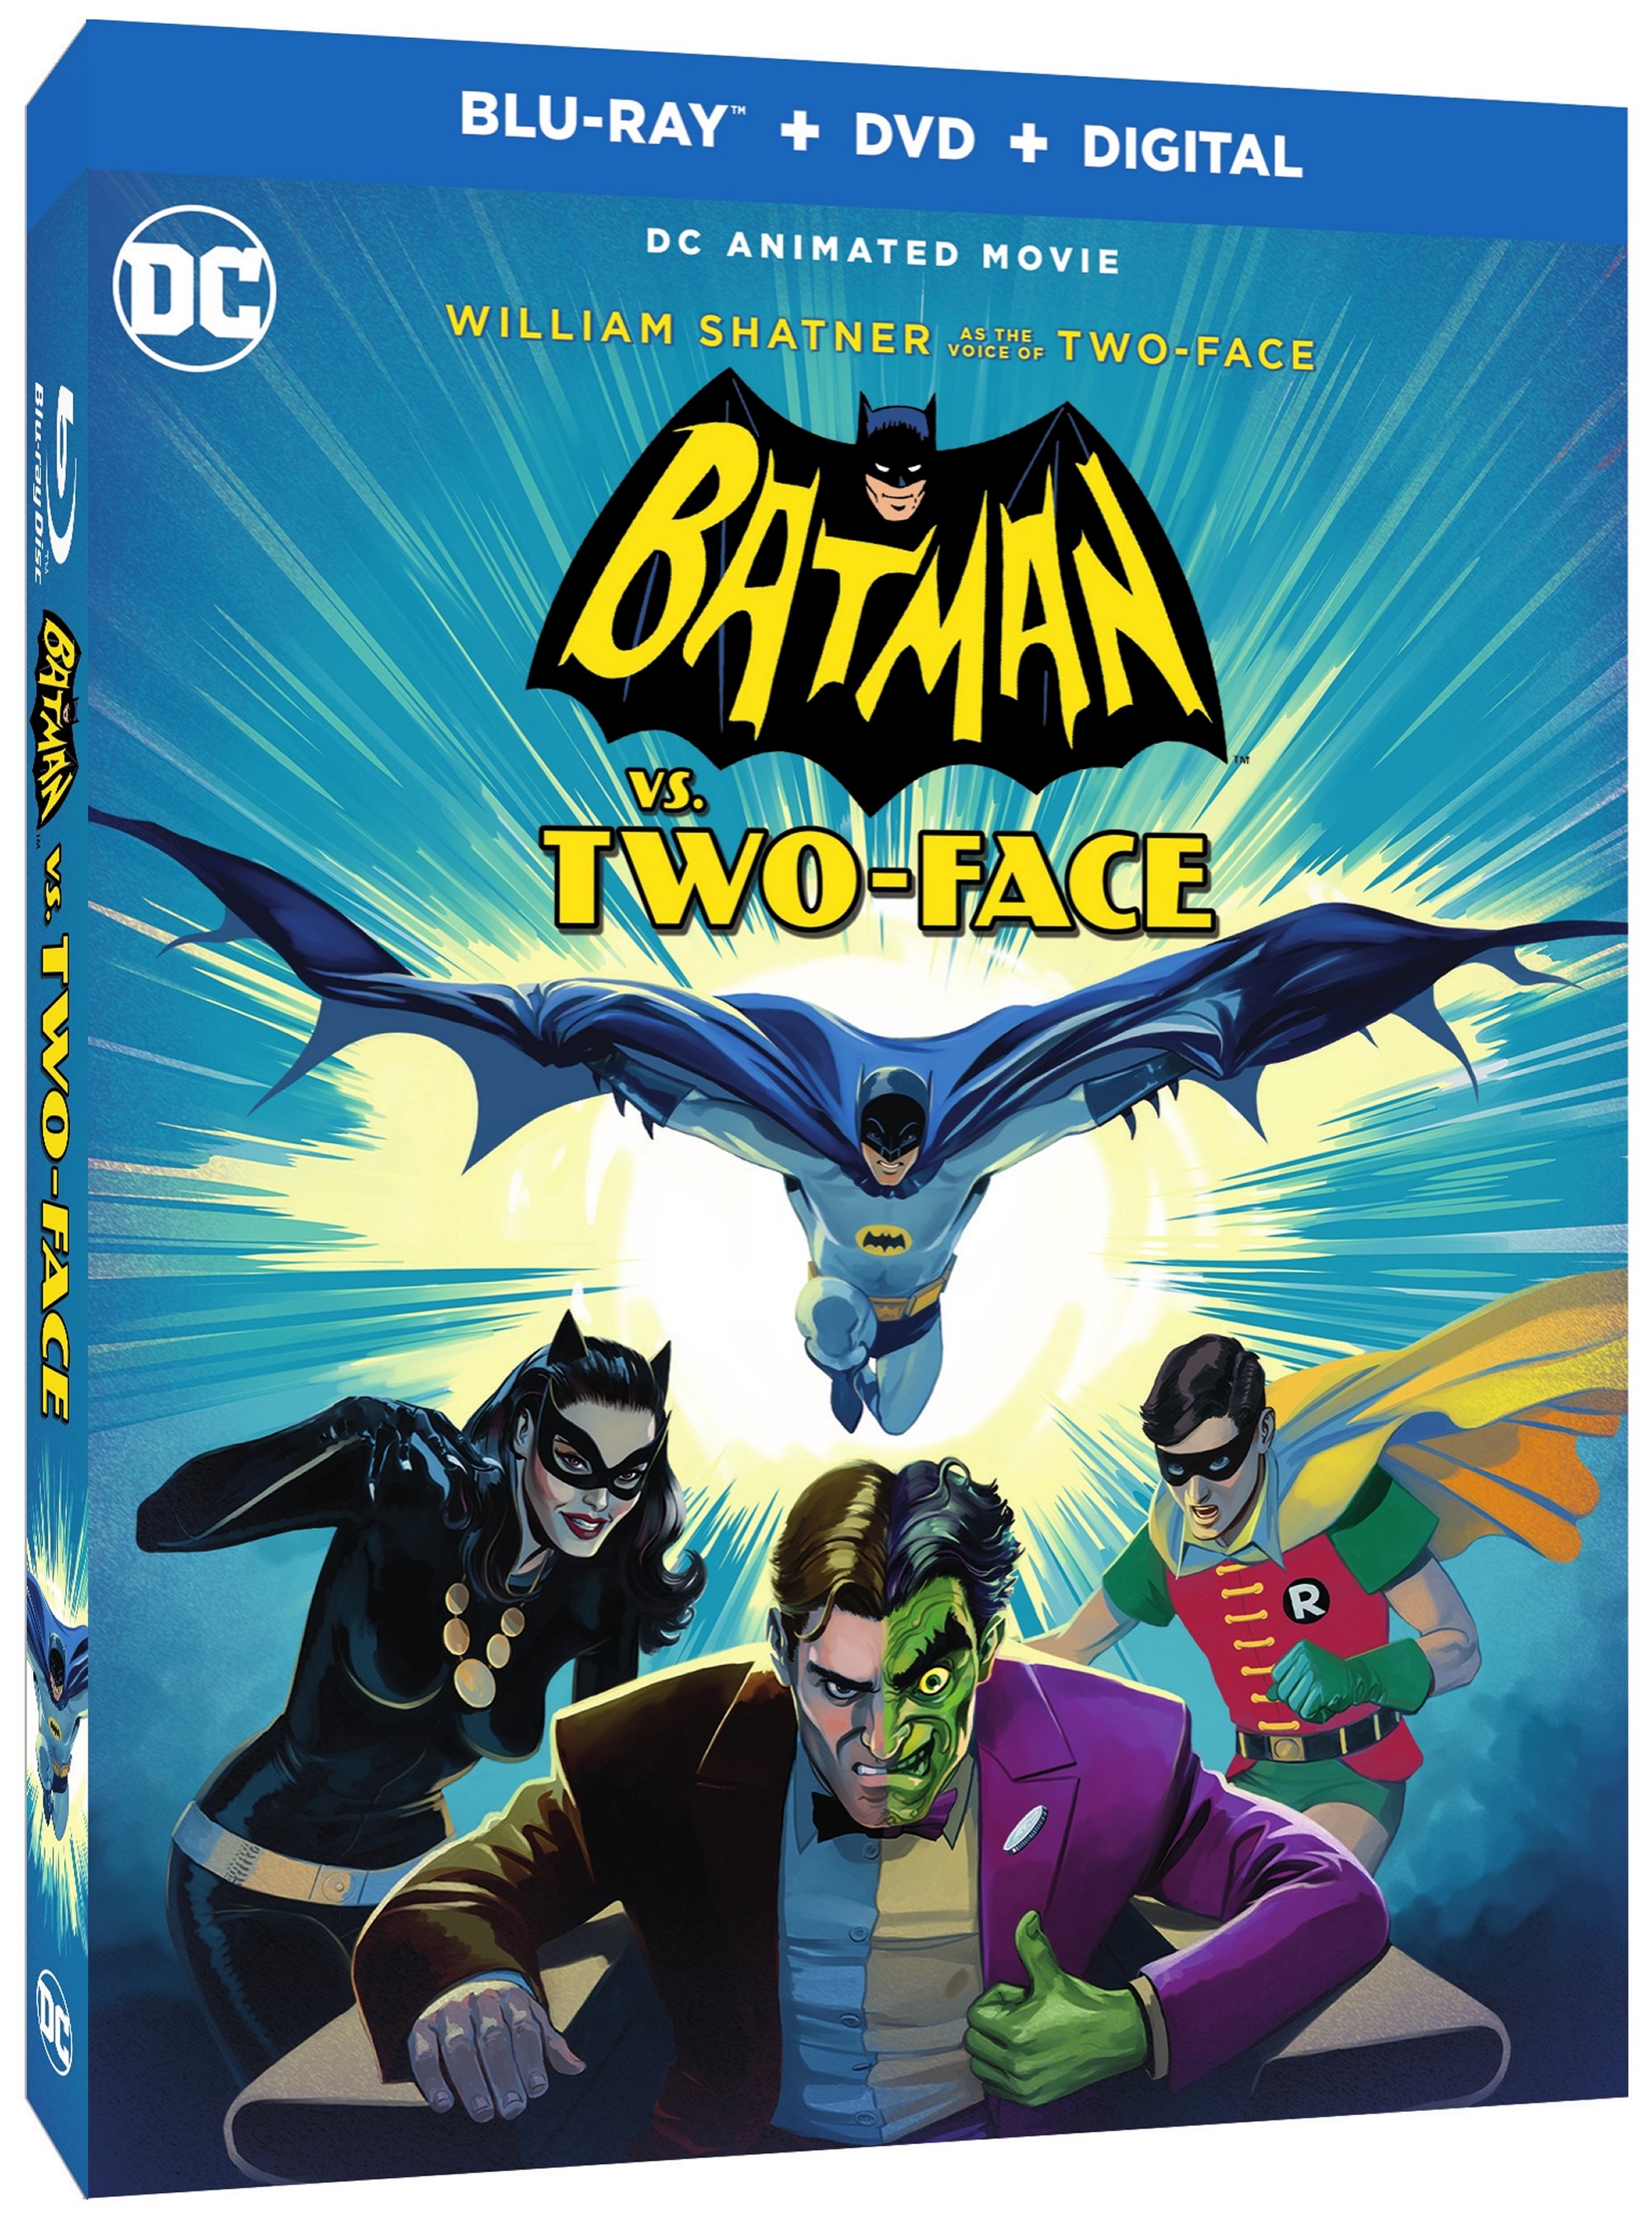 Adam West Lives On in Batman vs Two-Face - The Batman Universe